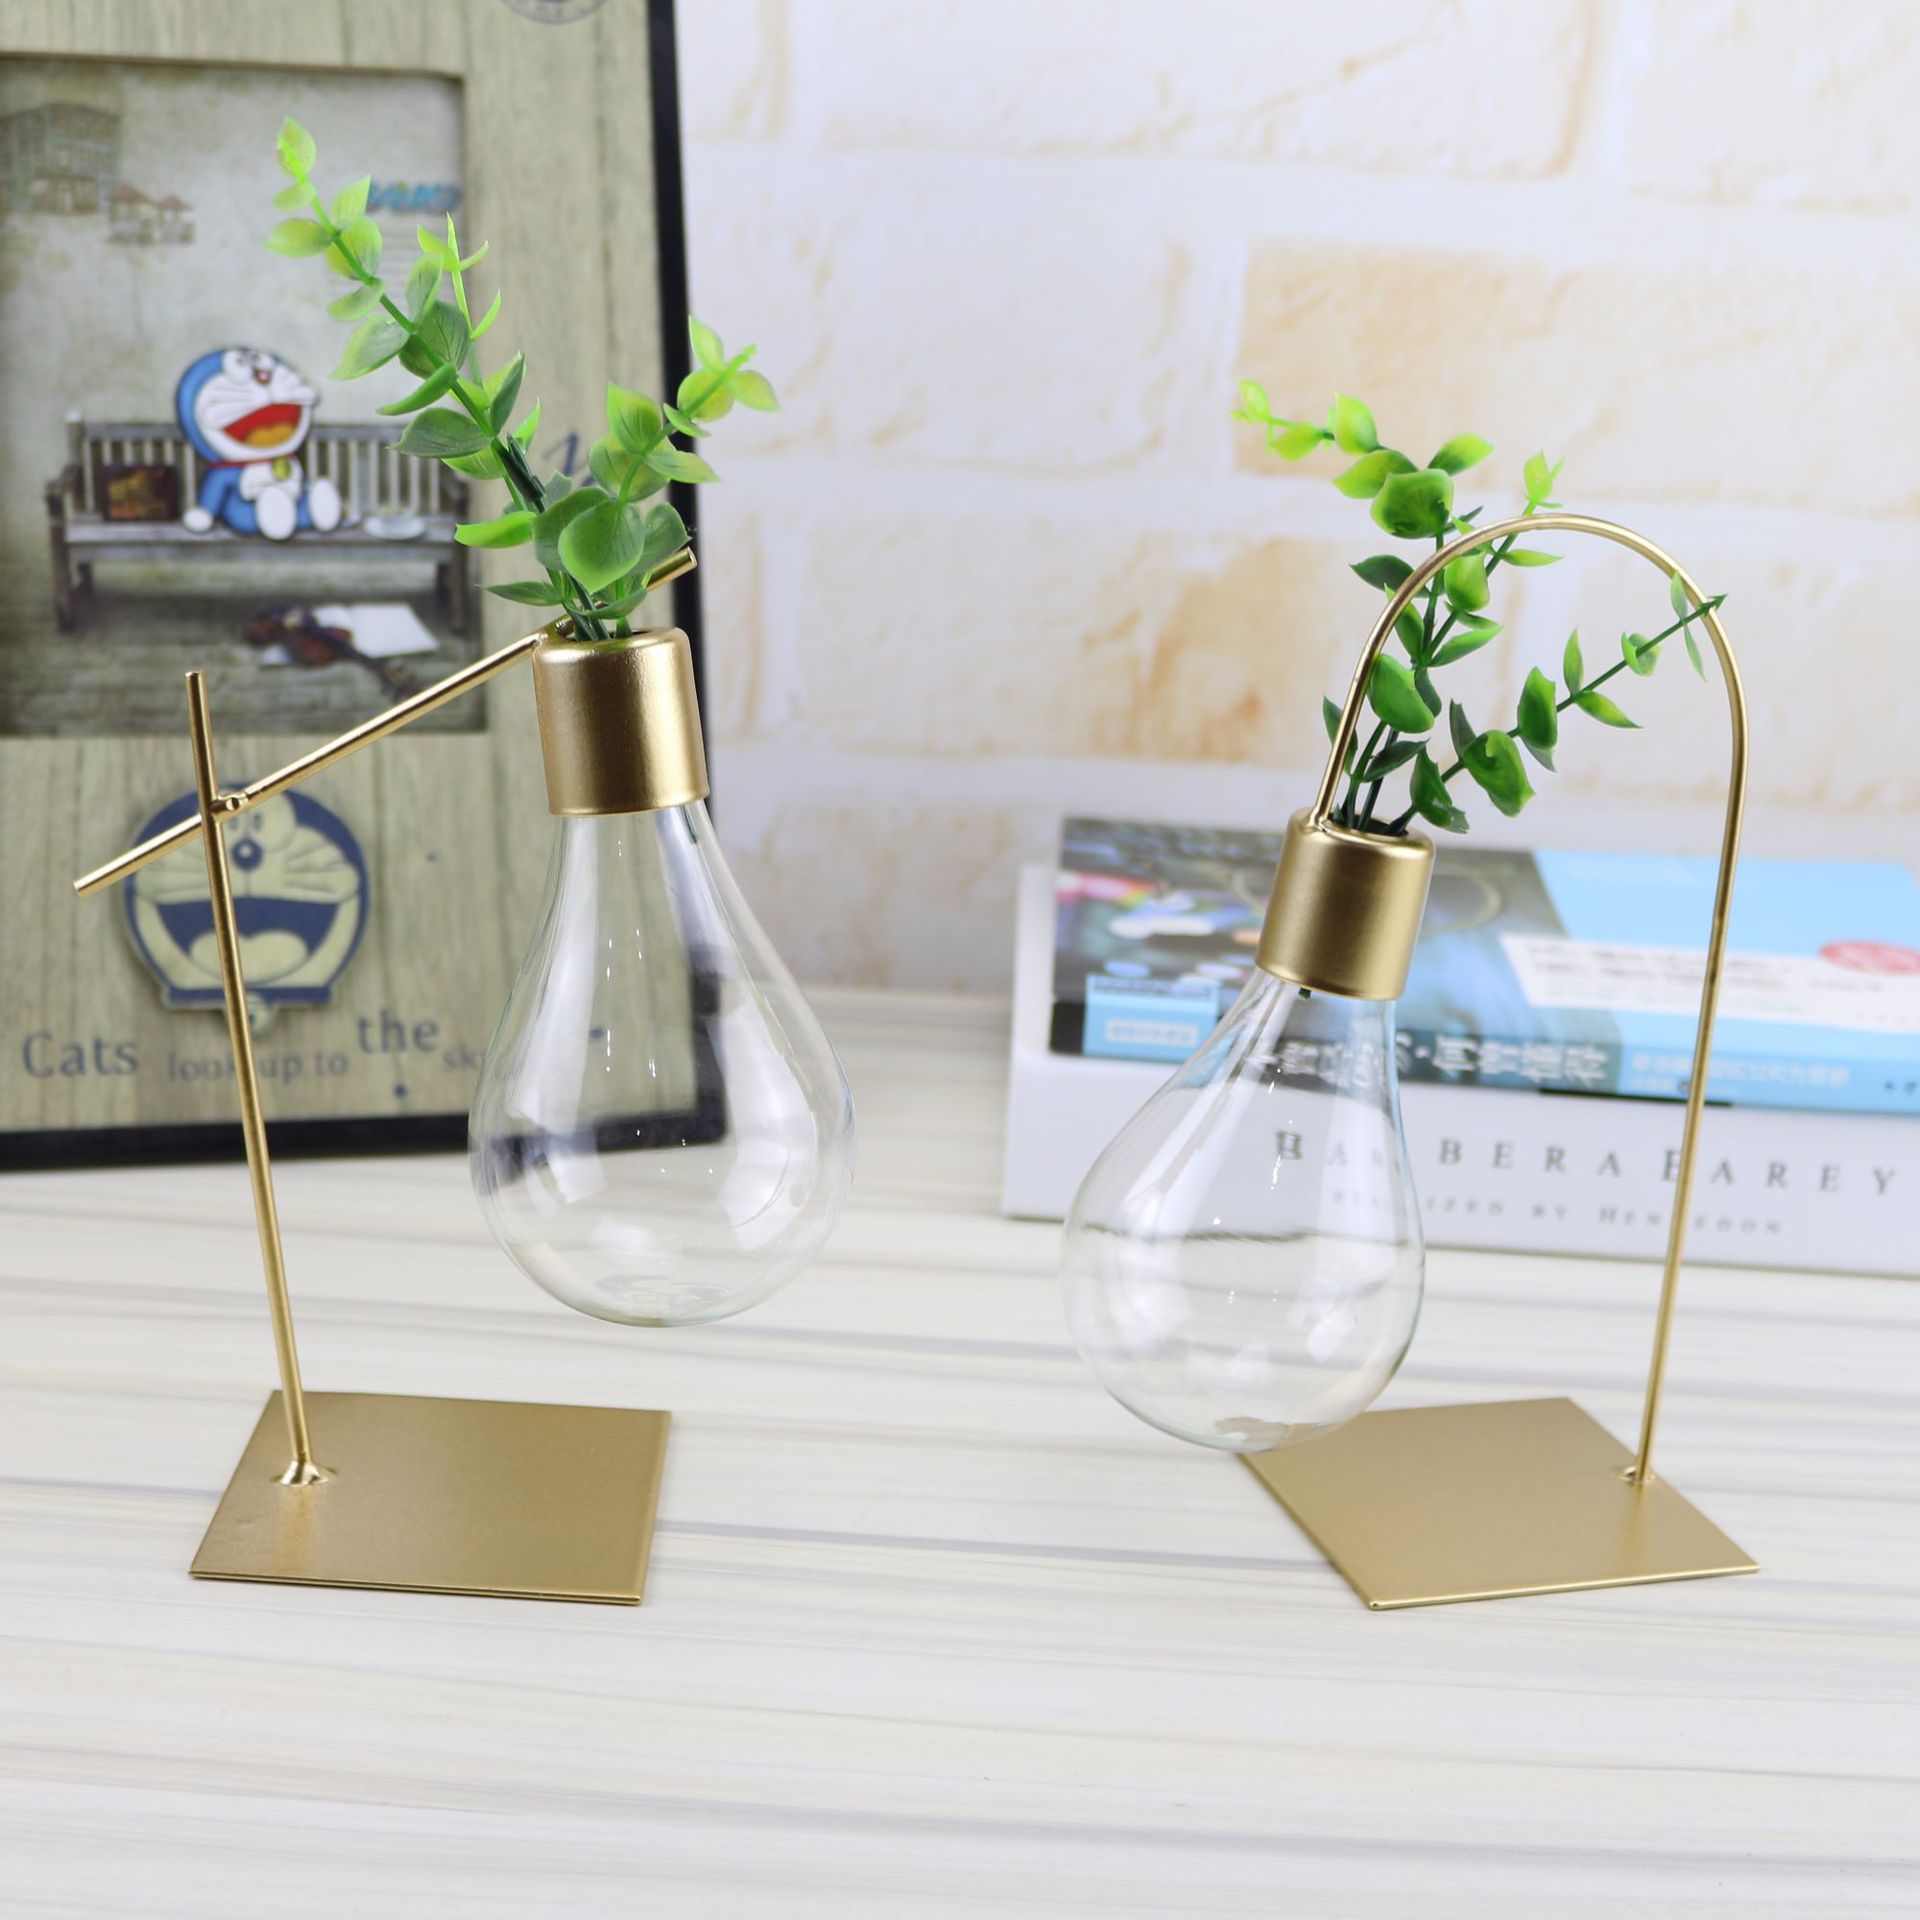 新款創意水培植物透明燈泡玻璃花瓶 容器客廳現代裝飾品新奇擺件